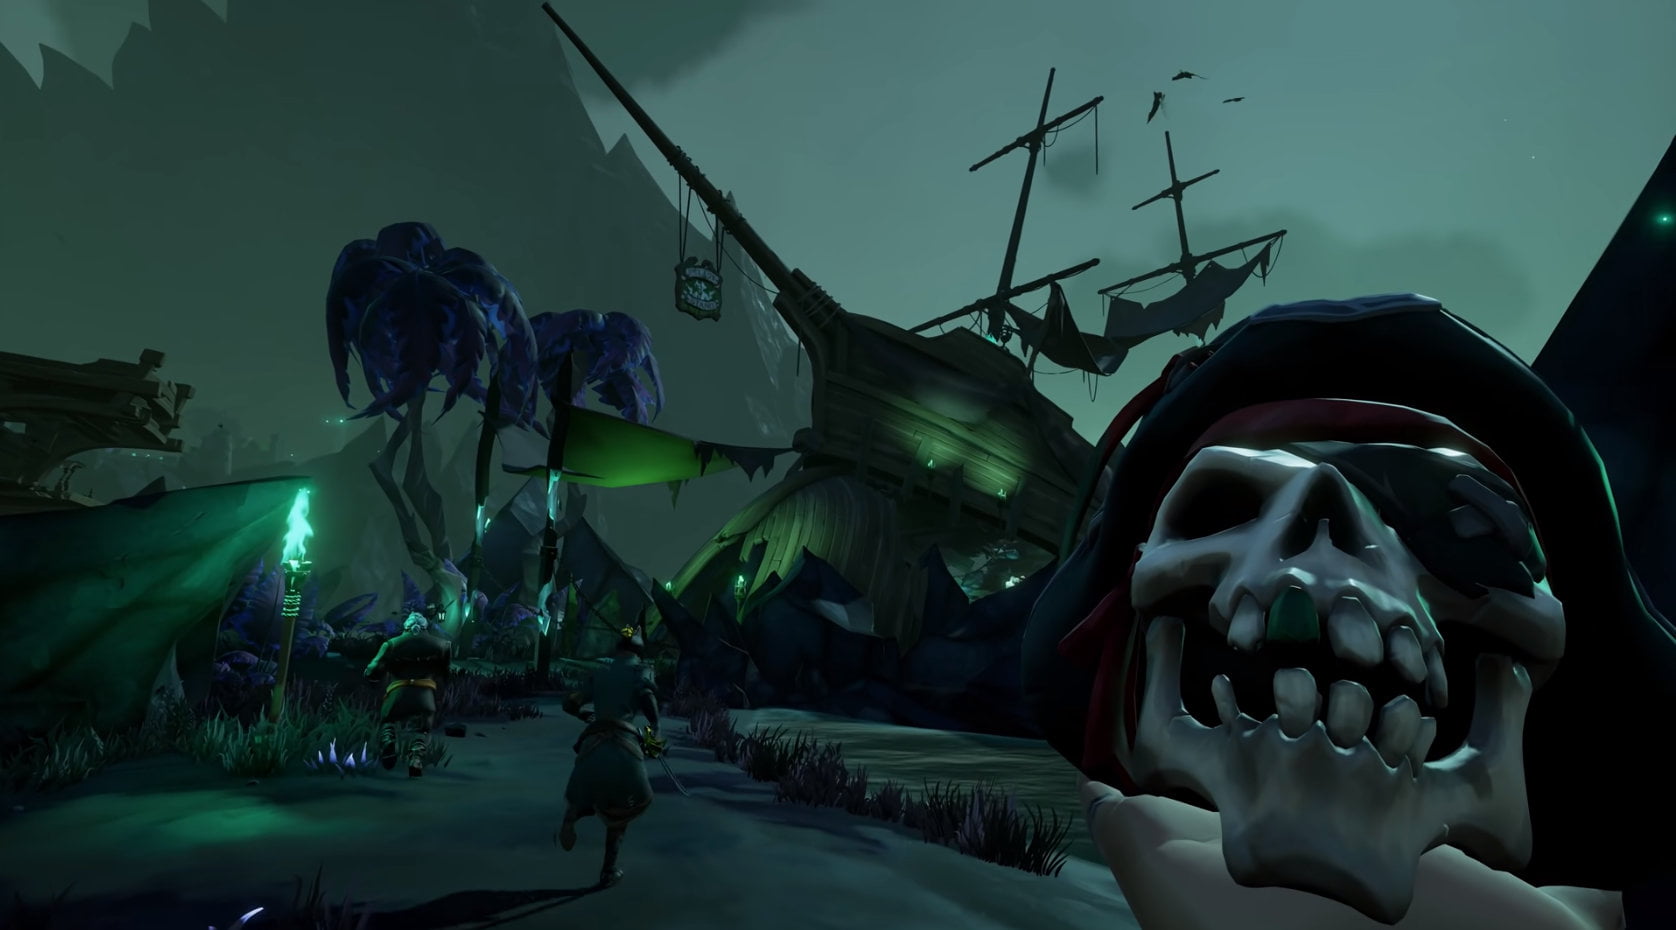 A pirate's skull